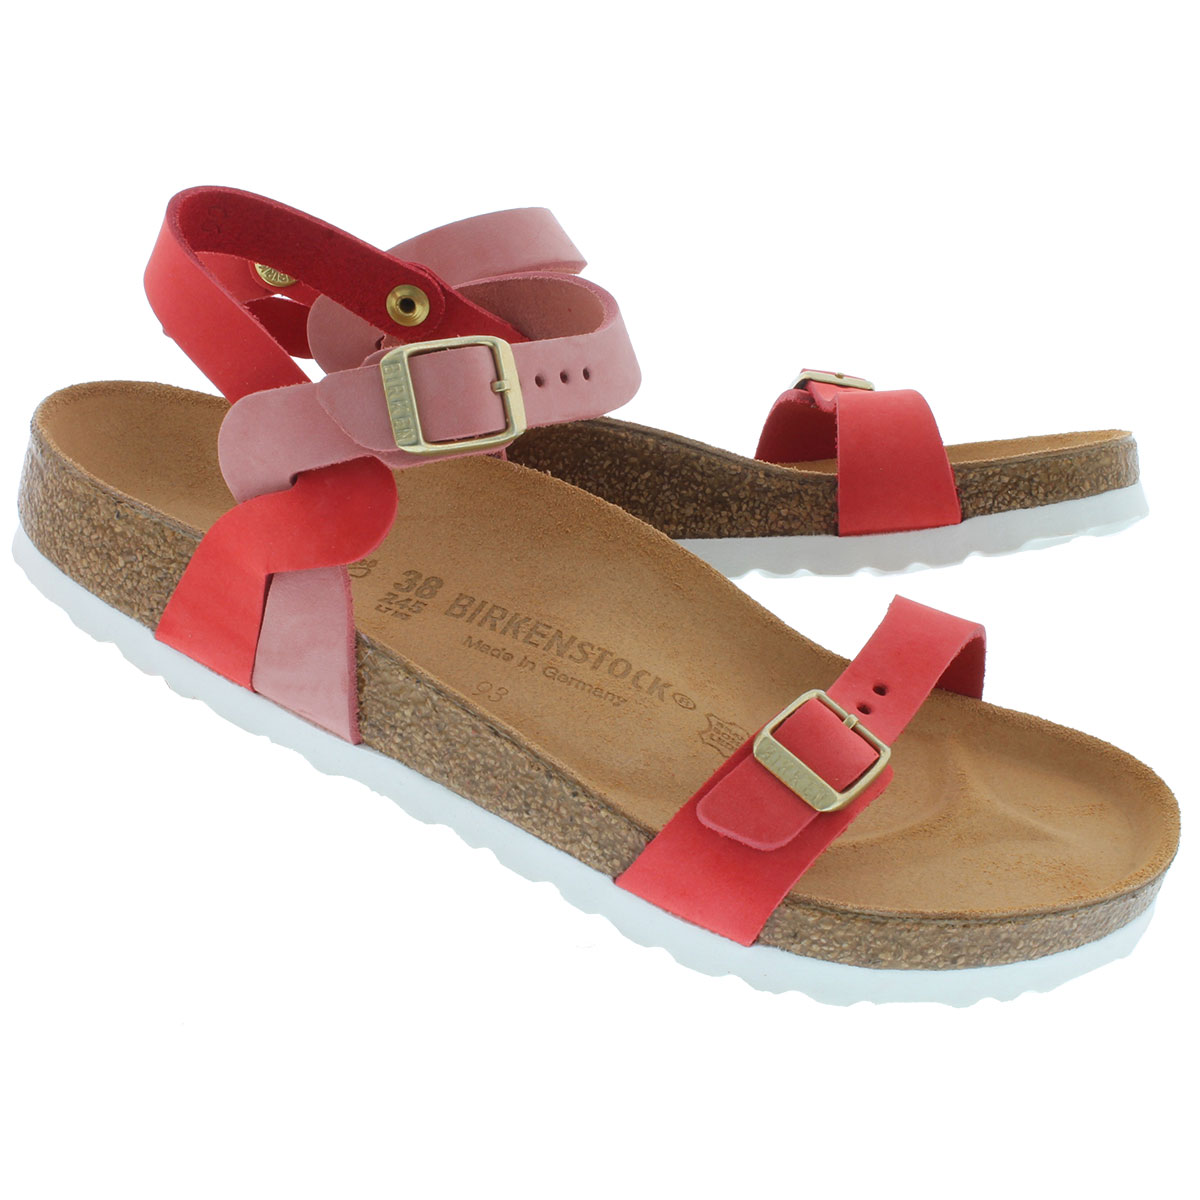 Birkenstock Women's PALI rosecoral cork footbed sandals 224231